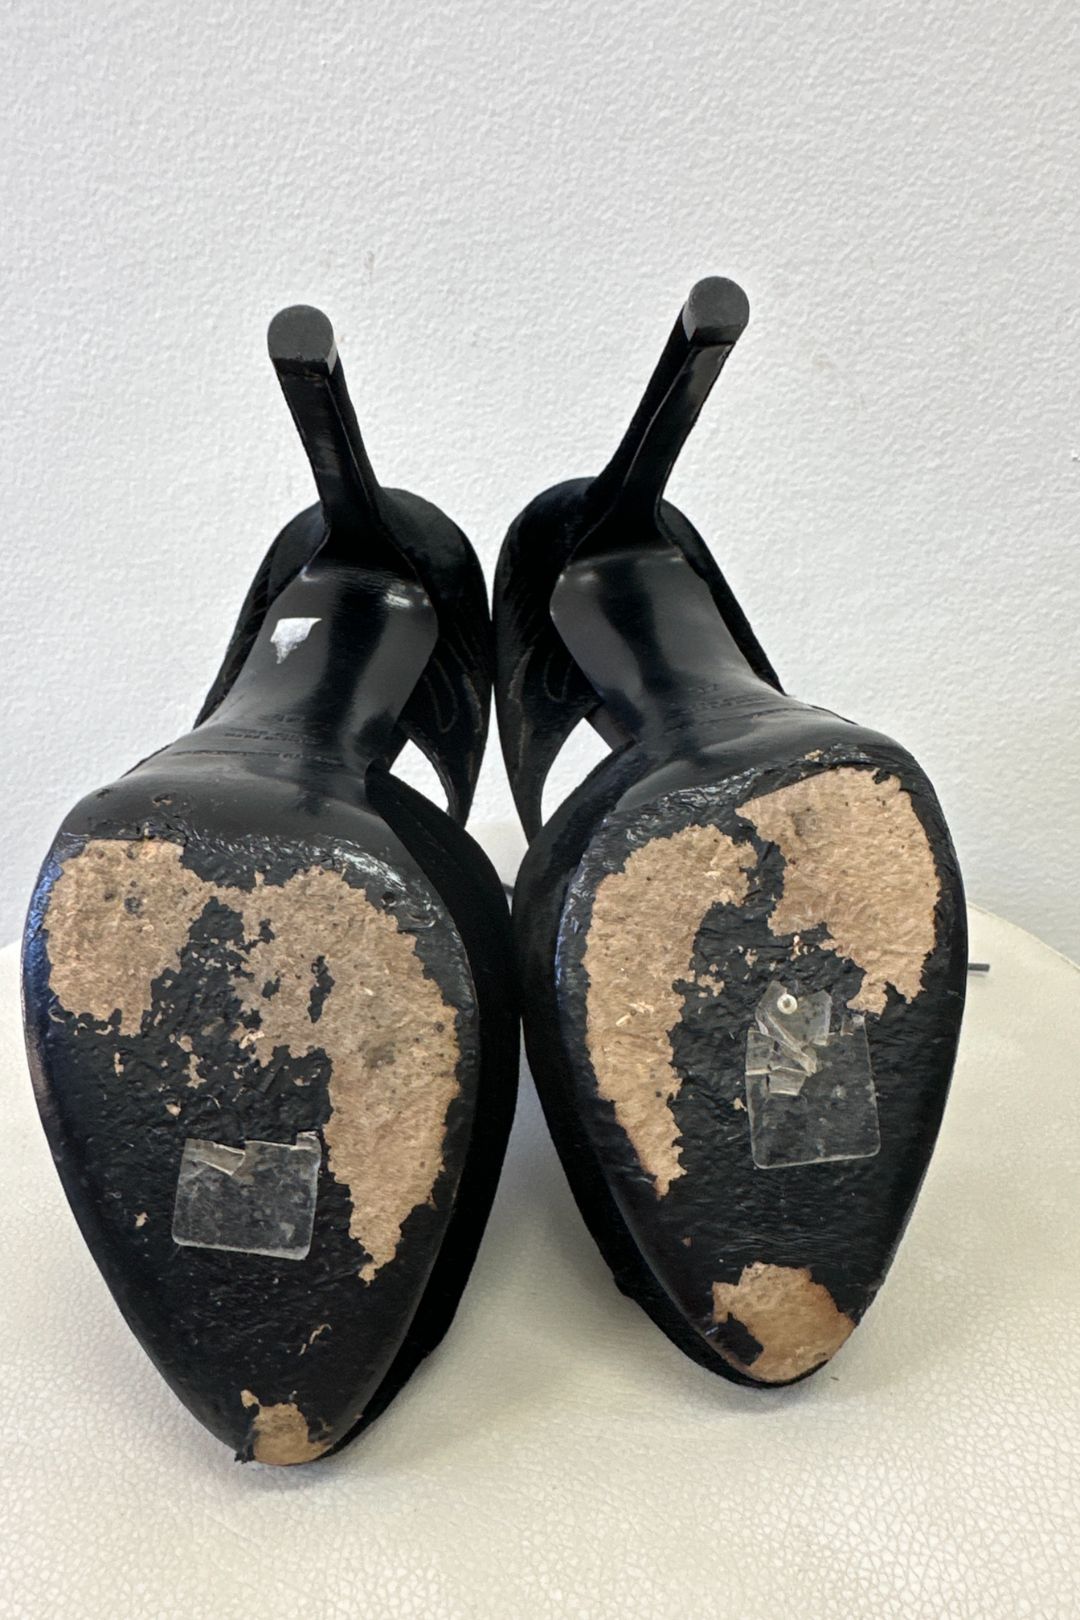 Emporio Armani Lace Up Heels in Black